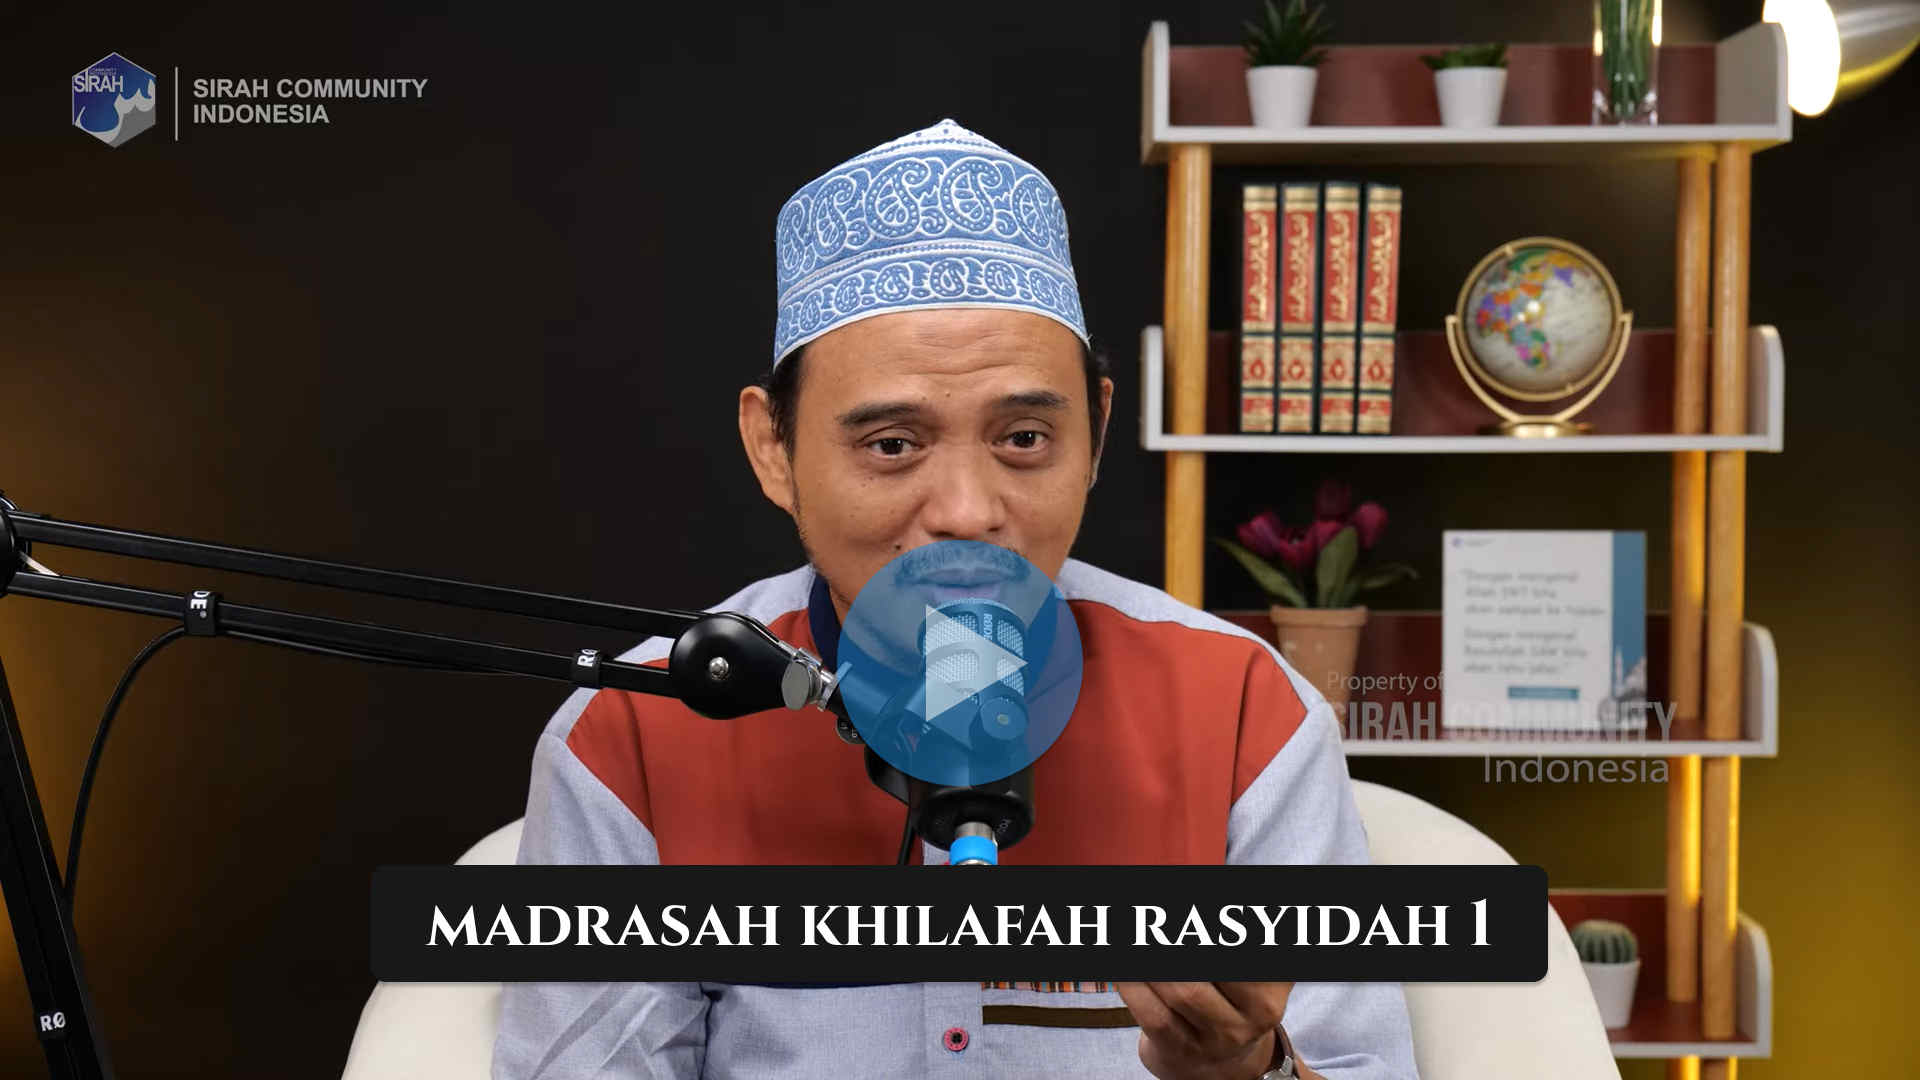 Madrasah Khilafah Rasyidah Paket 1 (MKR)